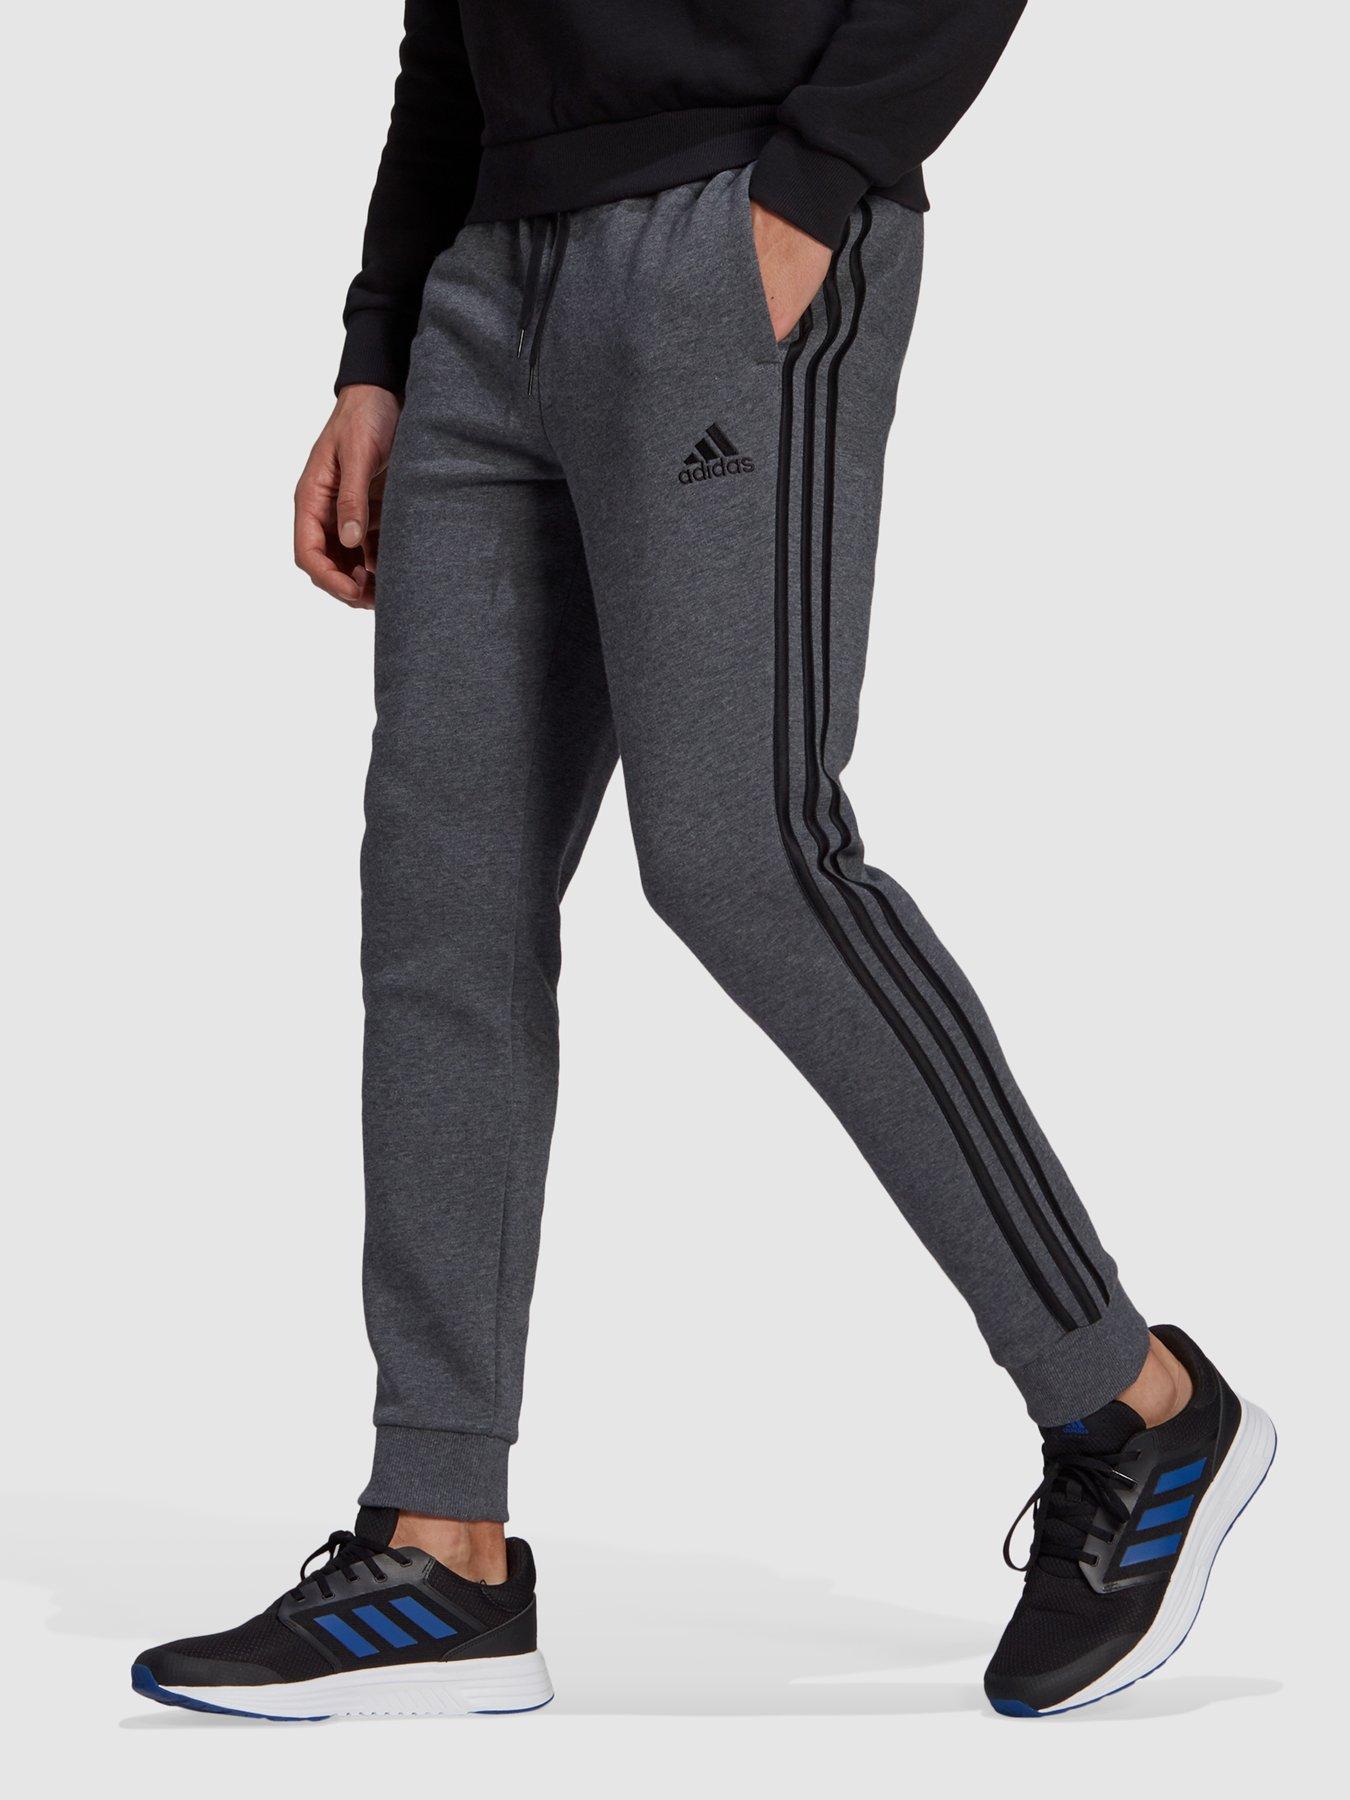 | Adidas | Jogging bottoms | Sportswear | | www.very.co.uk